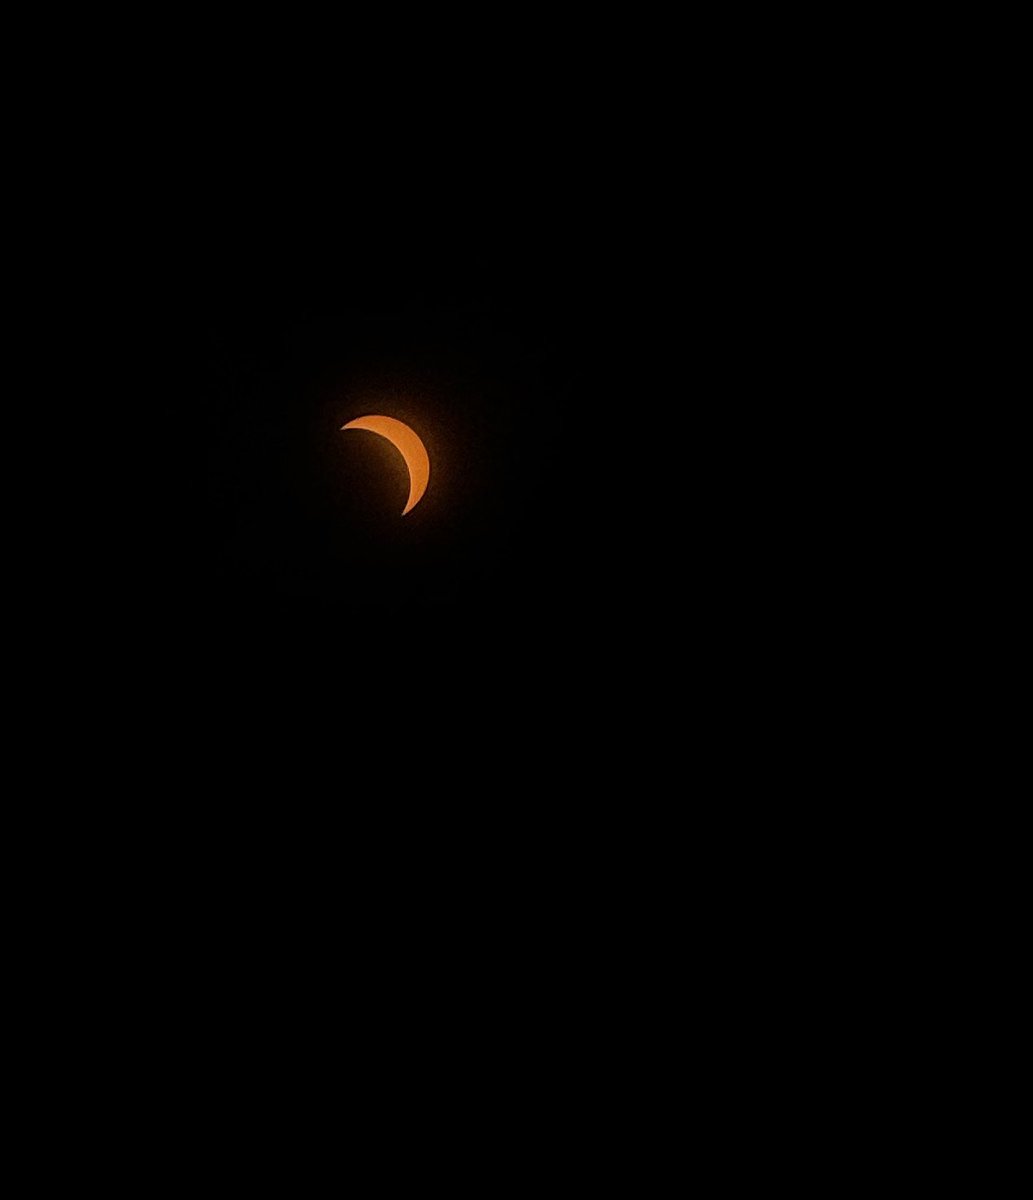 Peak in El Paso, TX at 12:35 pm. 80 percent. #Eclipse